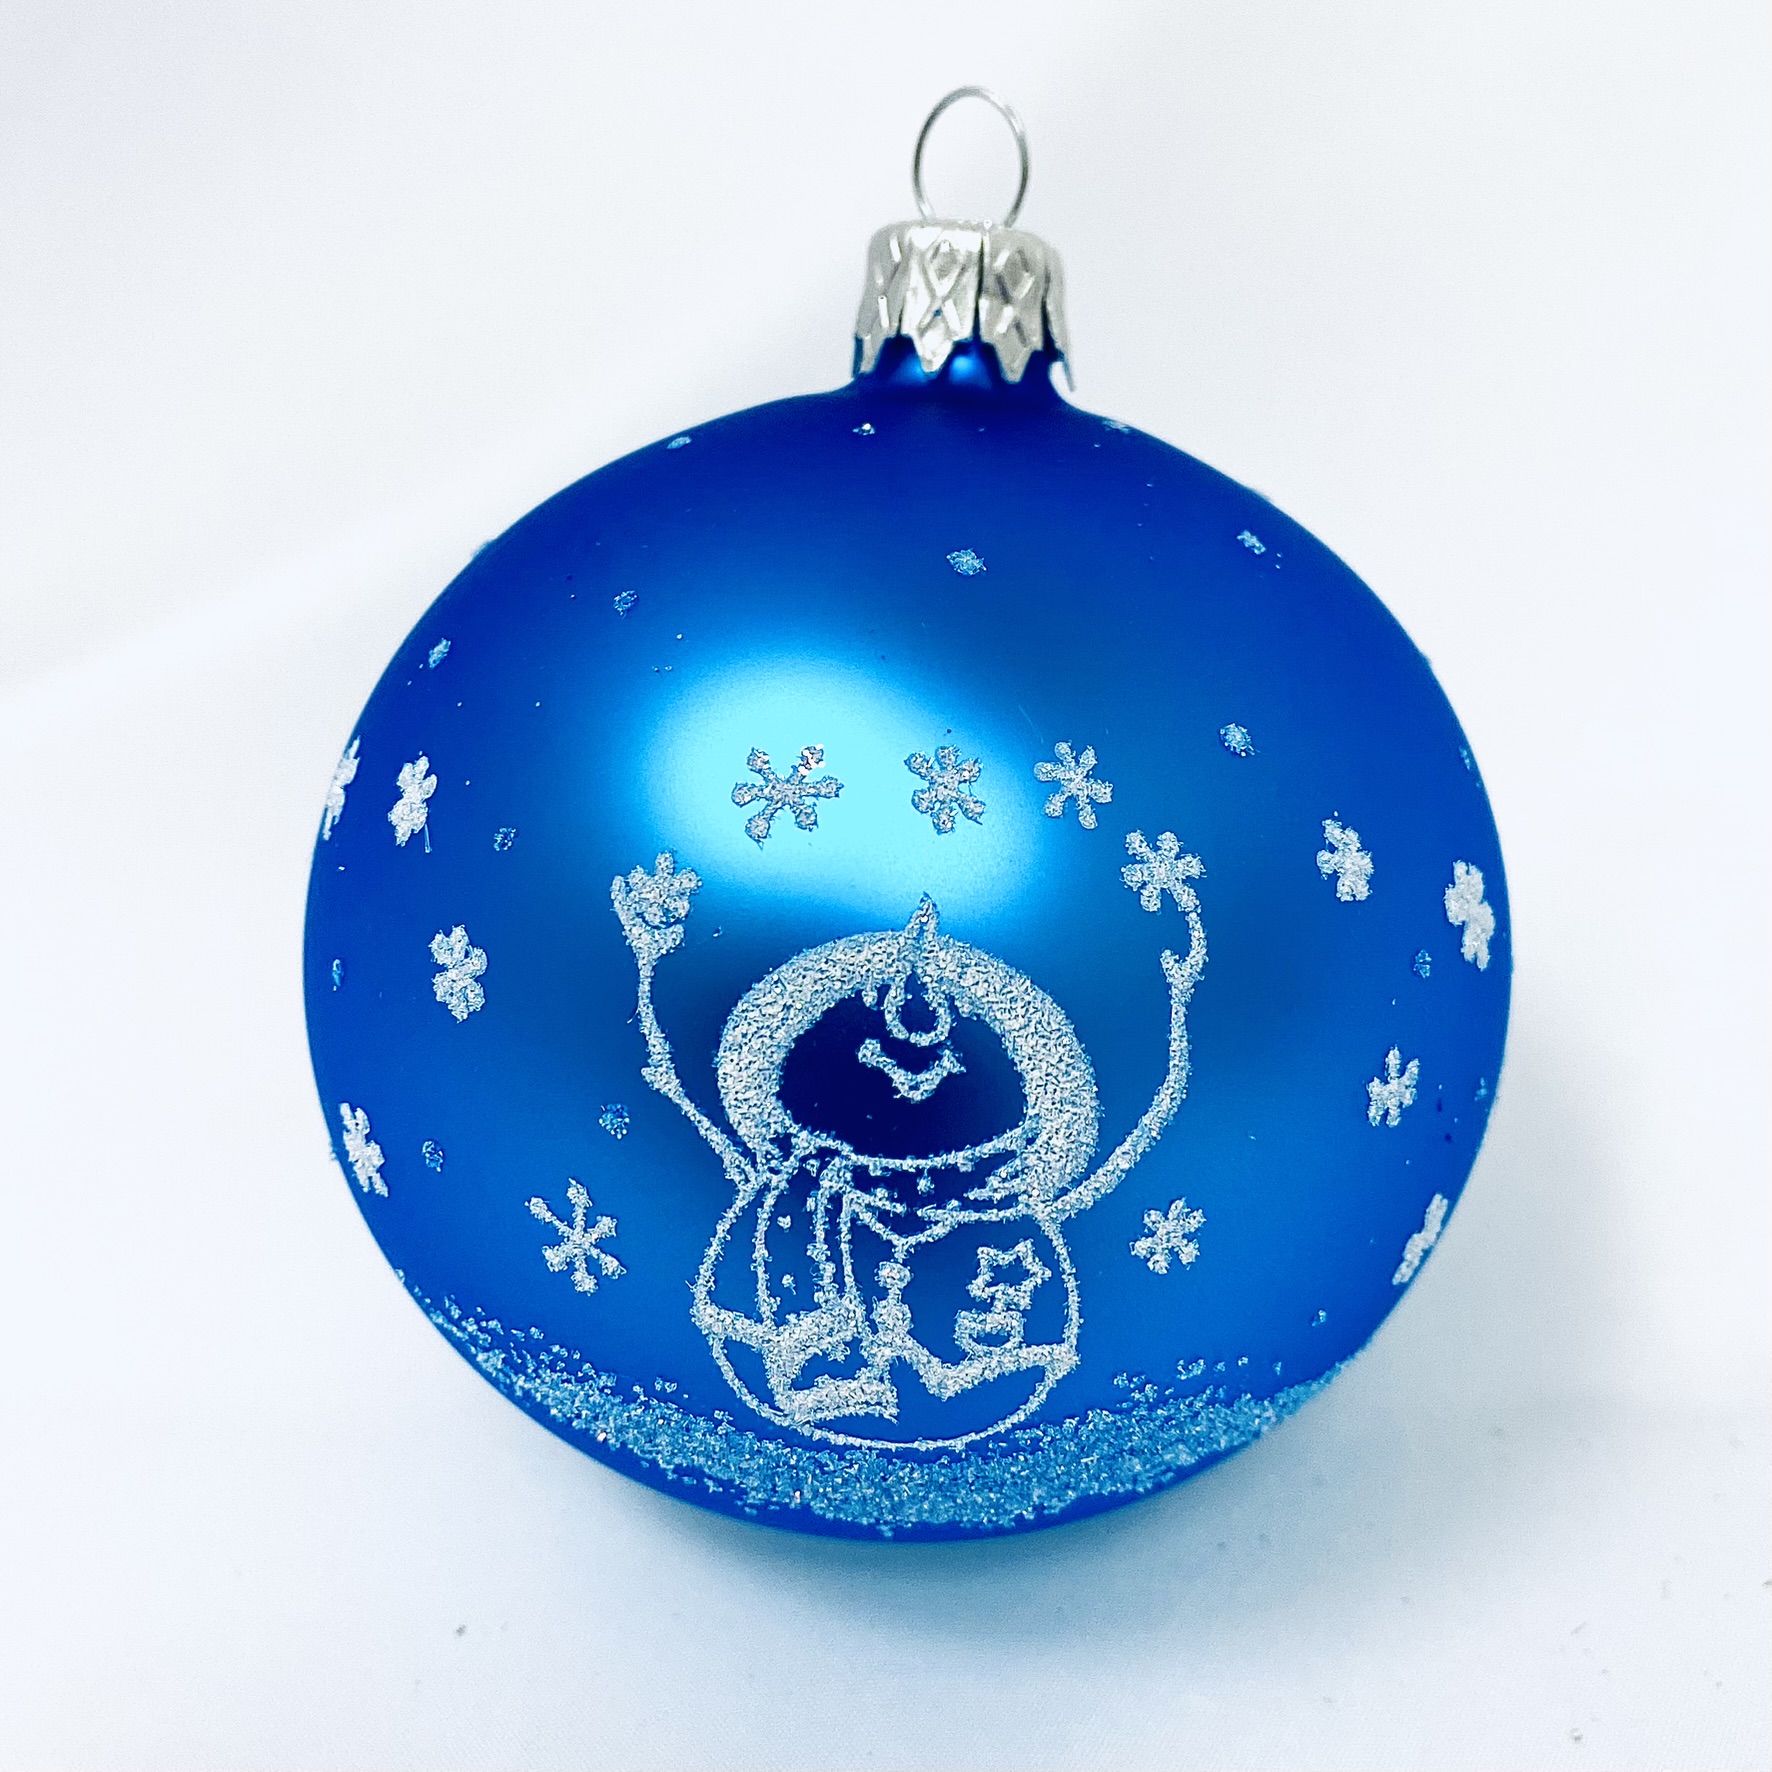 Skleněná vánoční ozdoba s textem na přání - Sněhulák ve snu - možnost vlastního textu (modrá, 1 ks, 8 cm) Balení: 1ks, Barva: modrá, Velikost: 8 cm